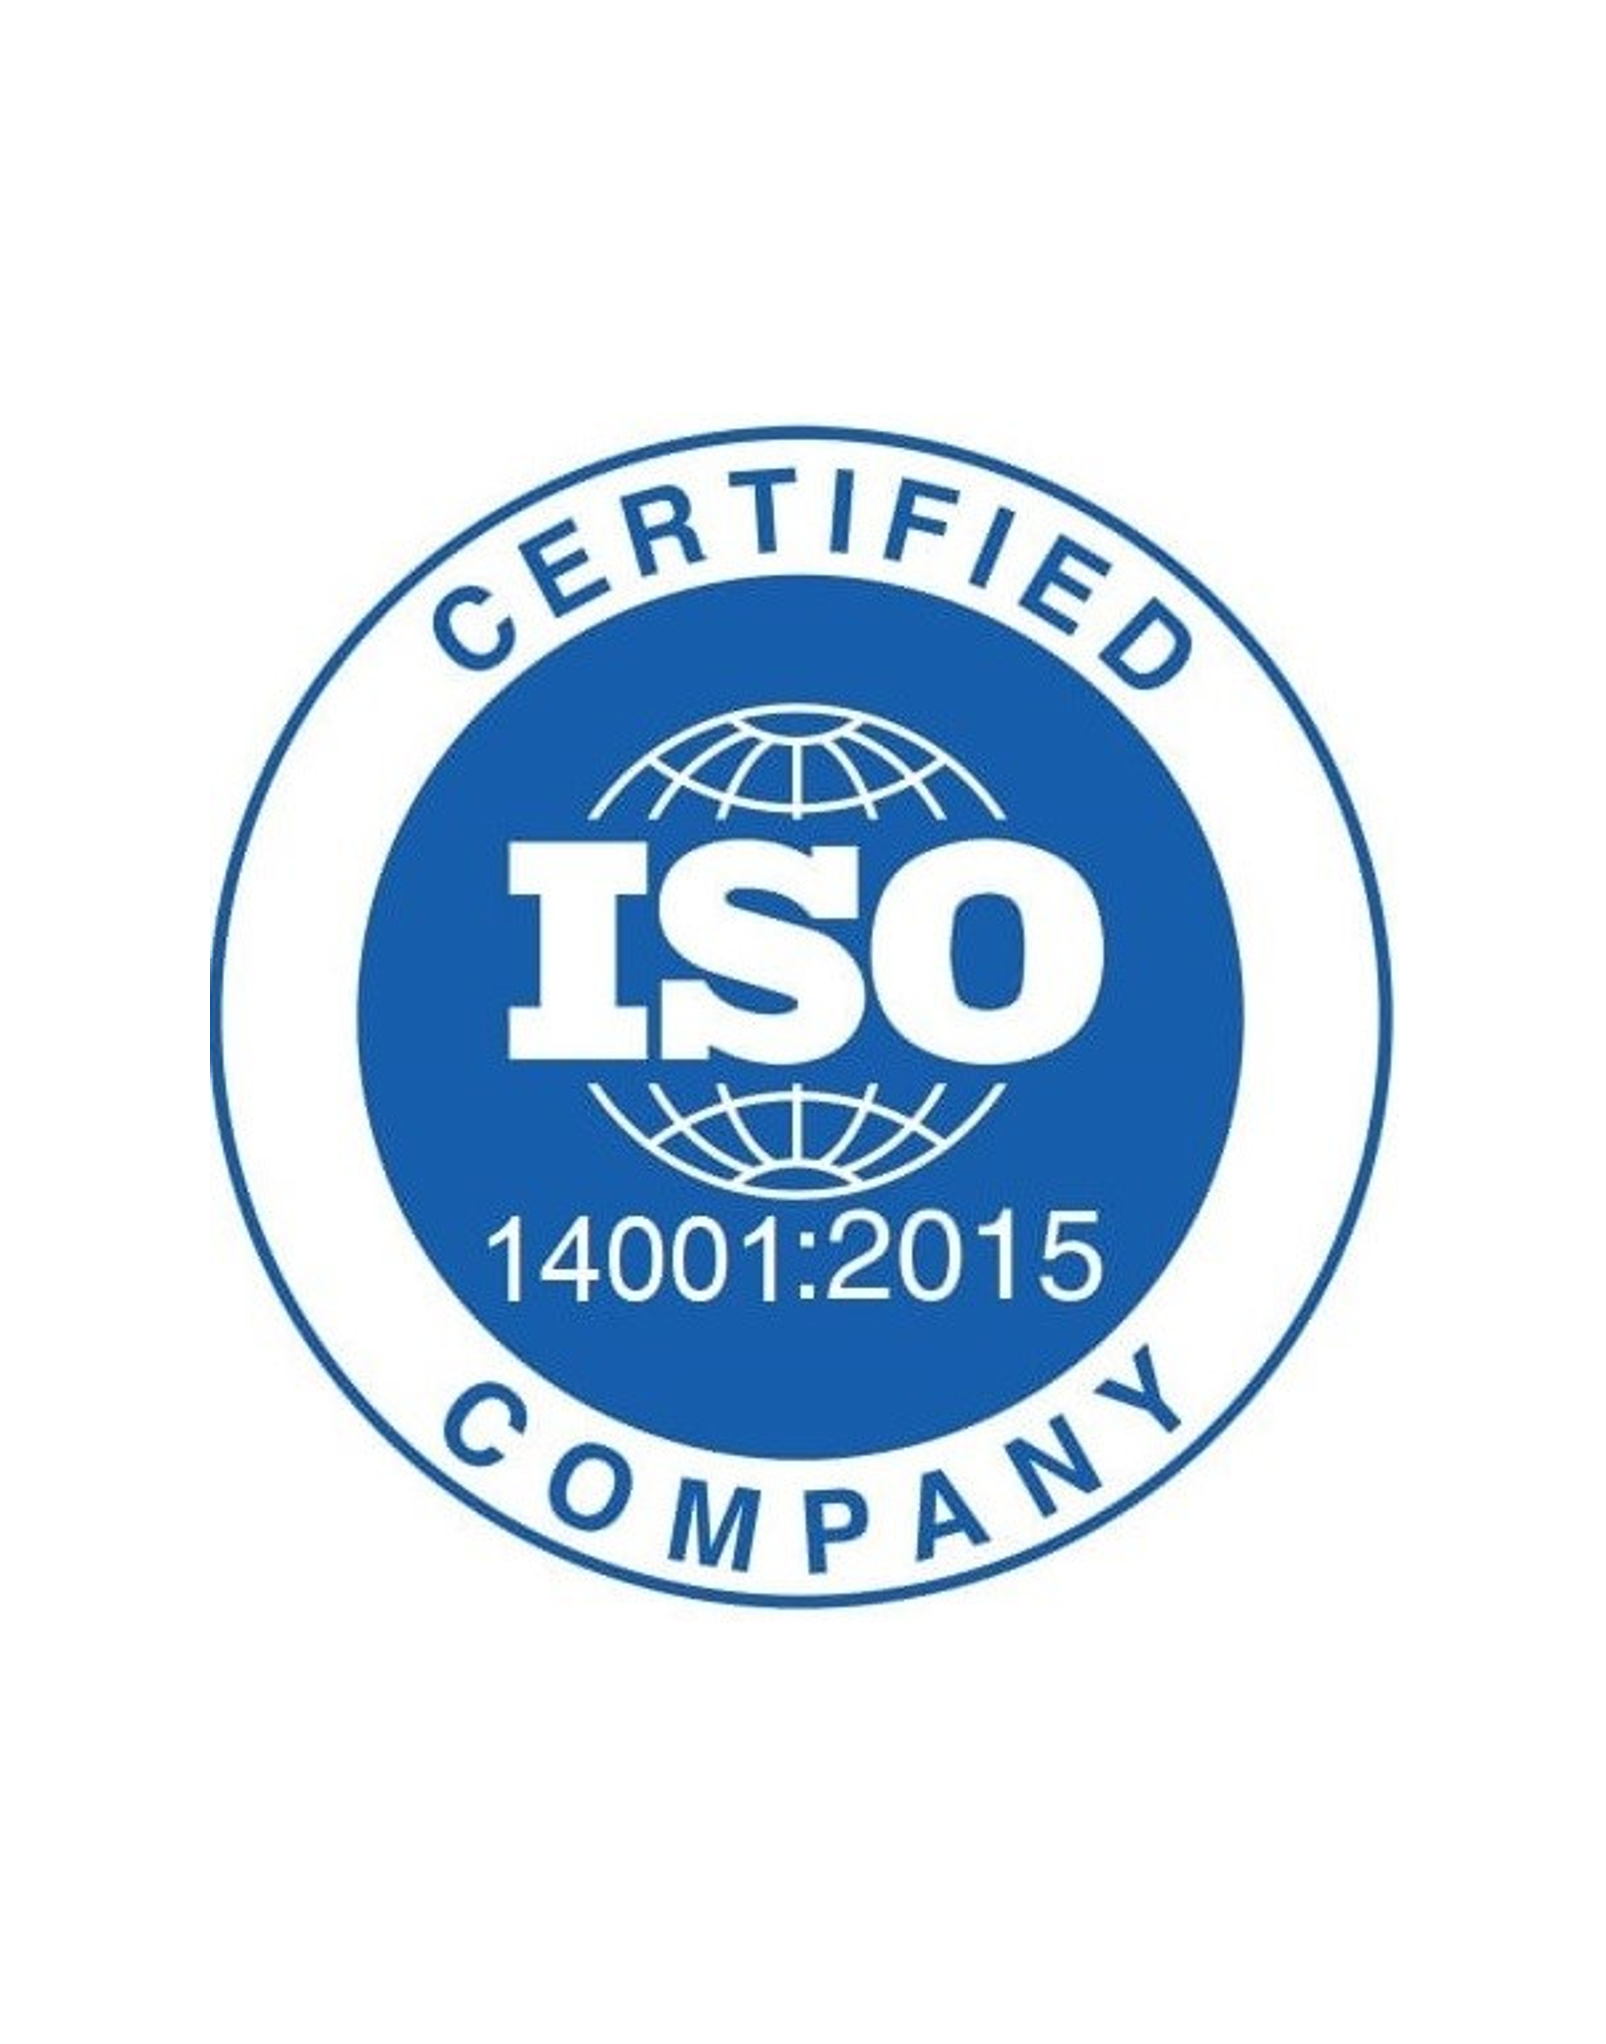 ISO 14001:2015 - Cambridge, UK